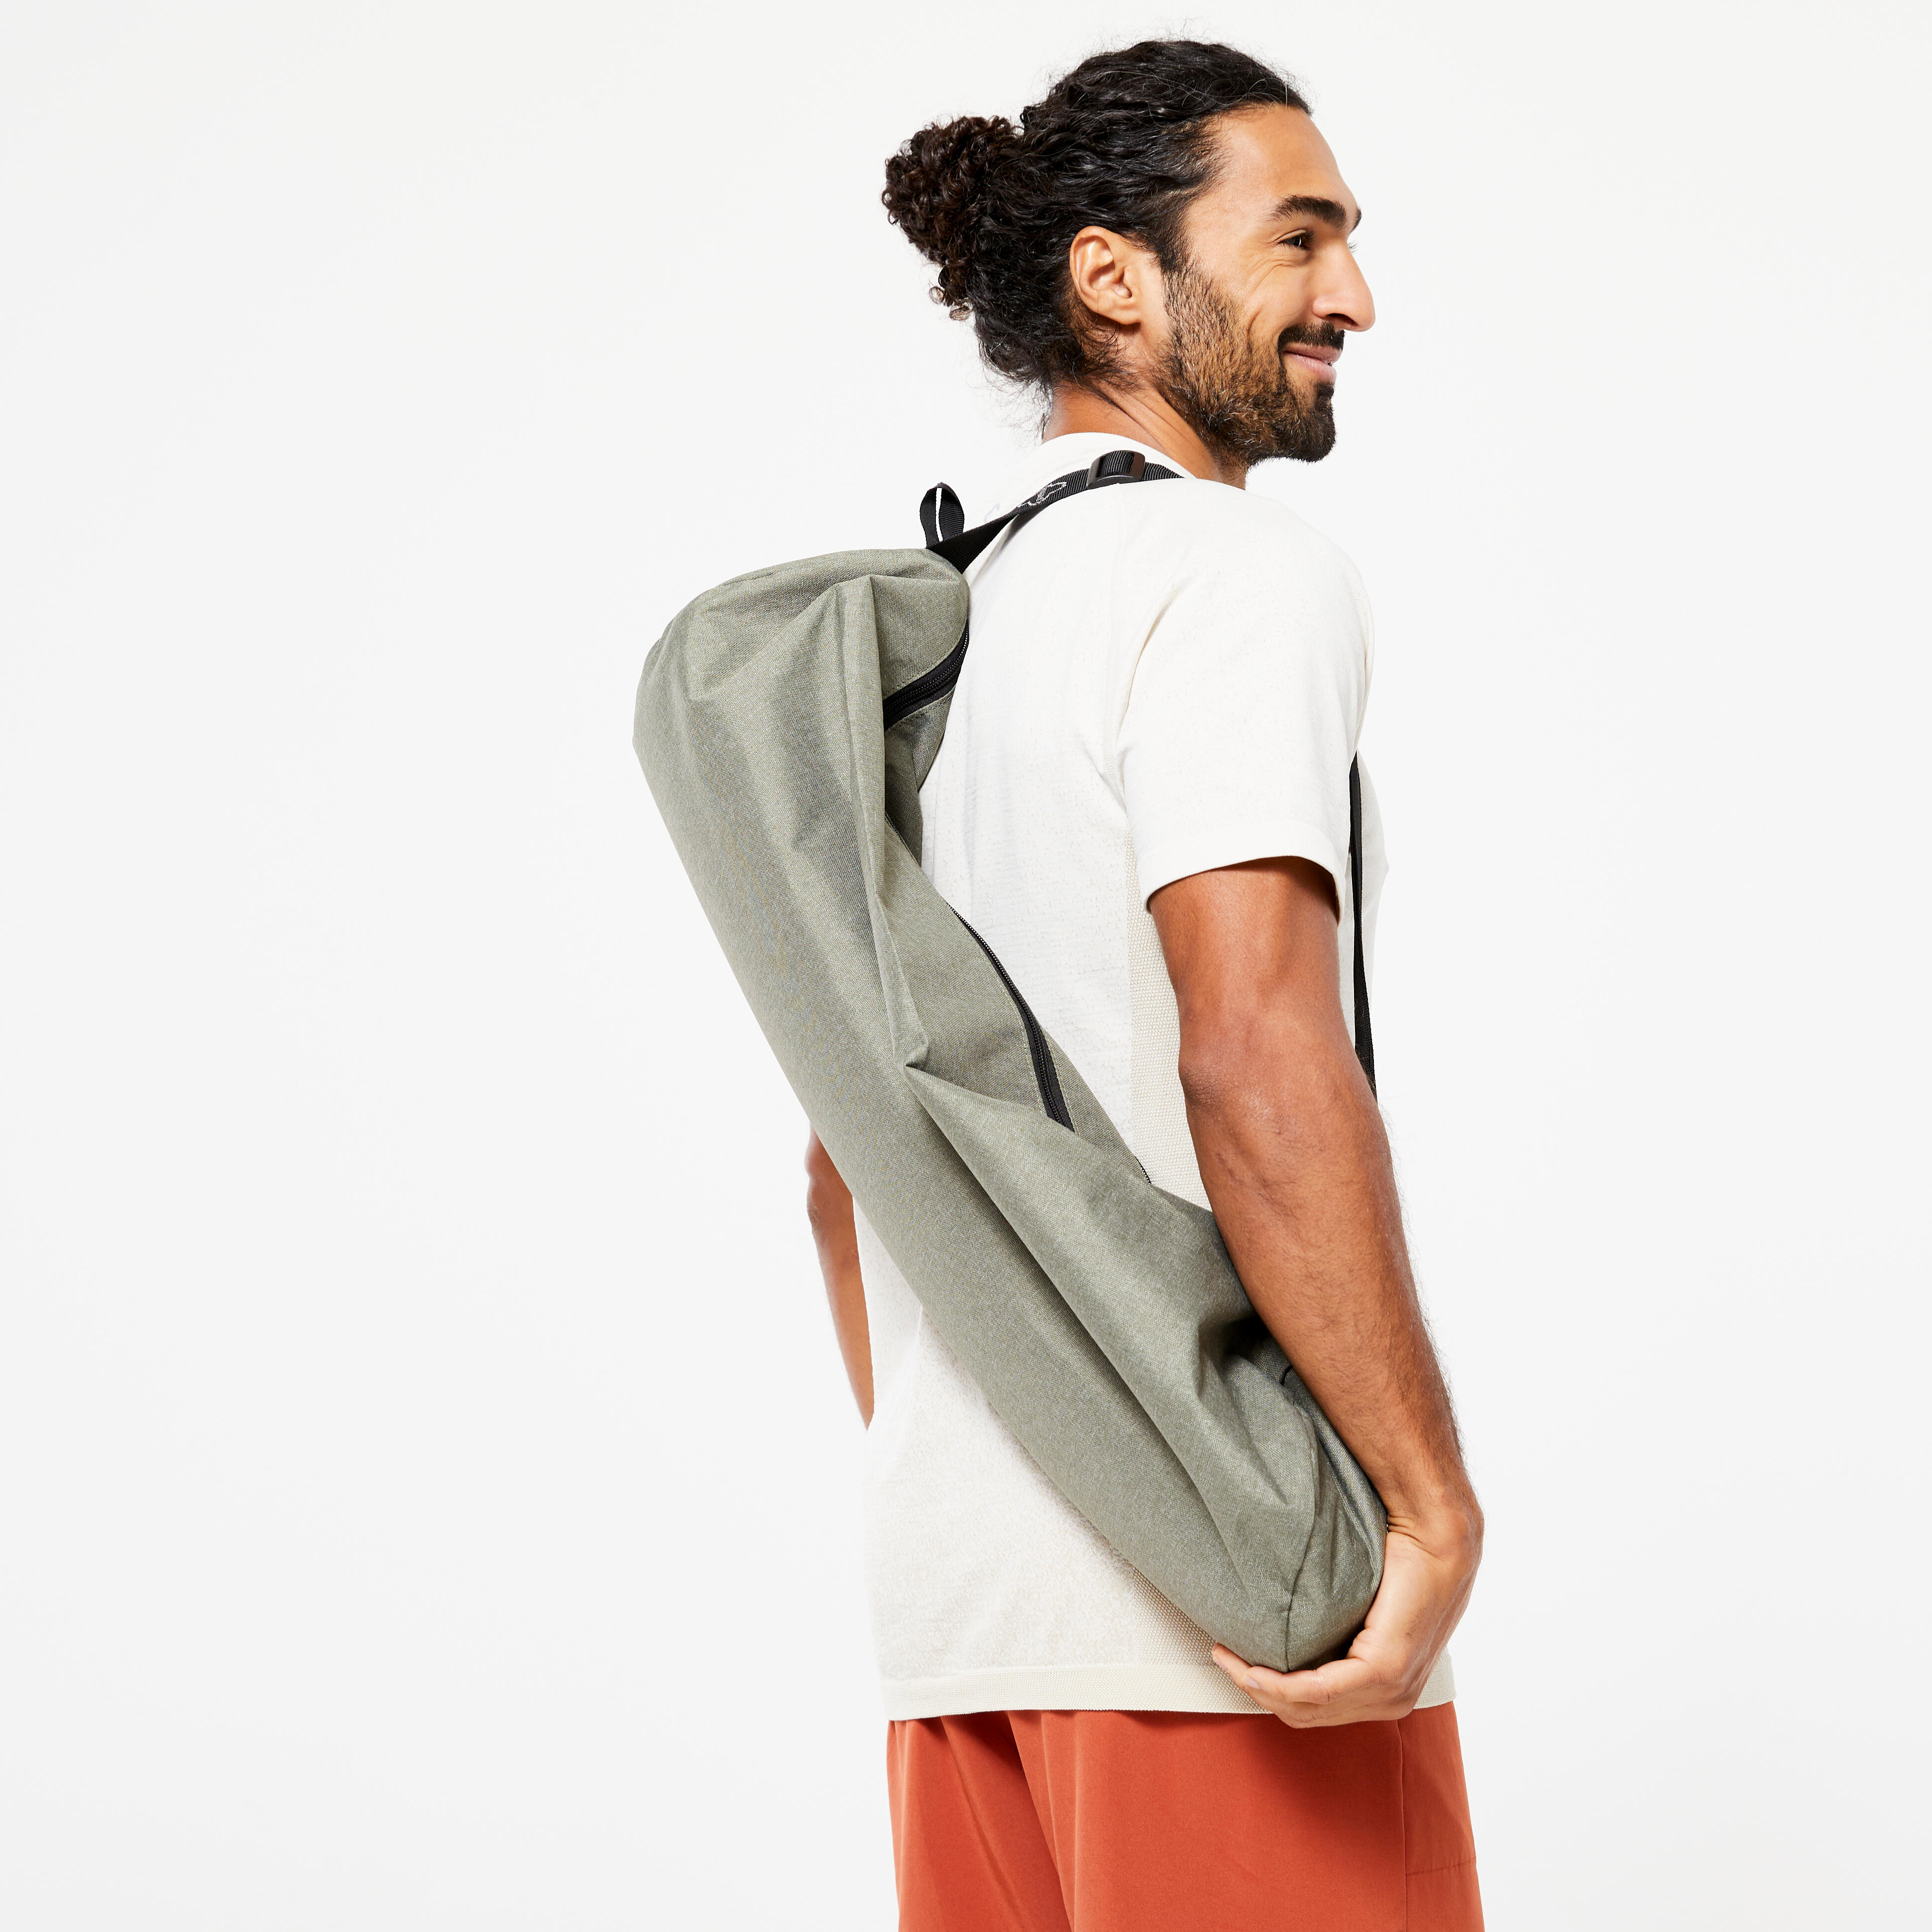 23 L Yoga Mat Bag